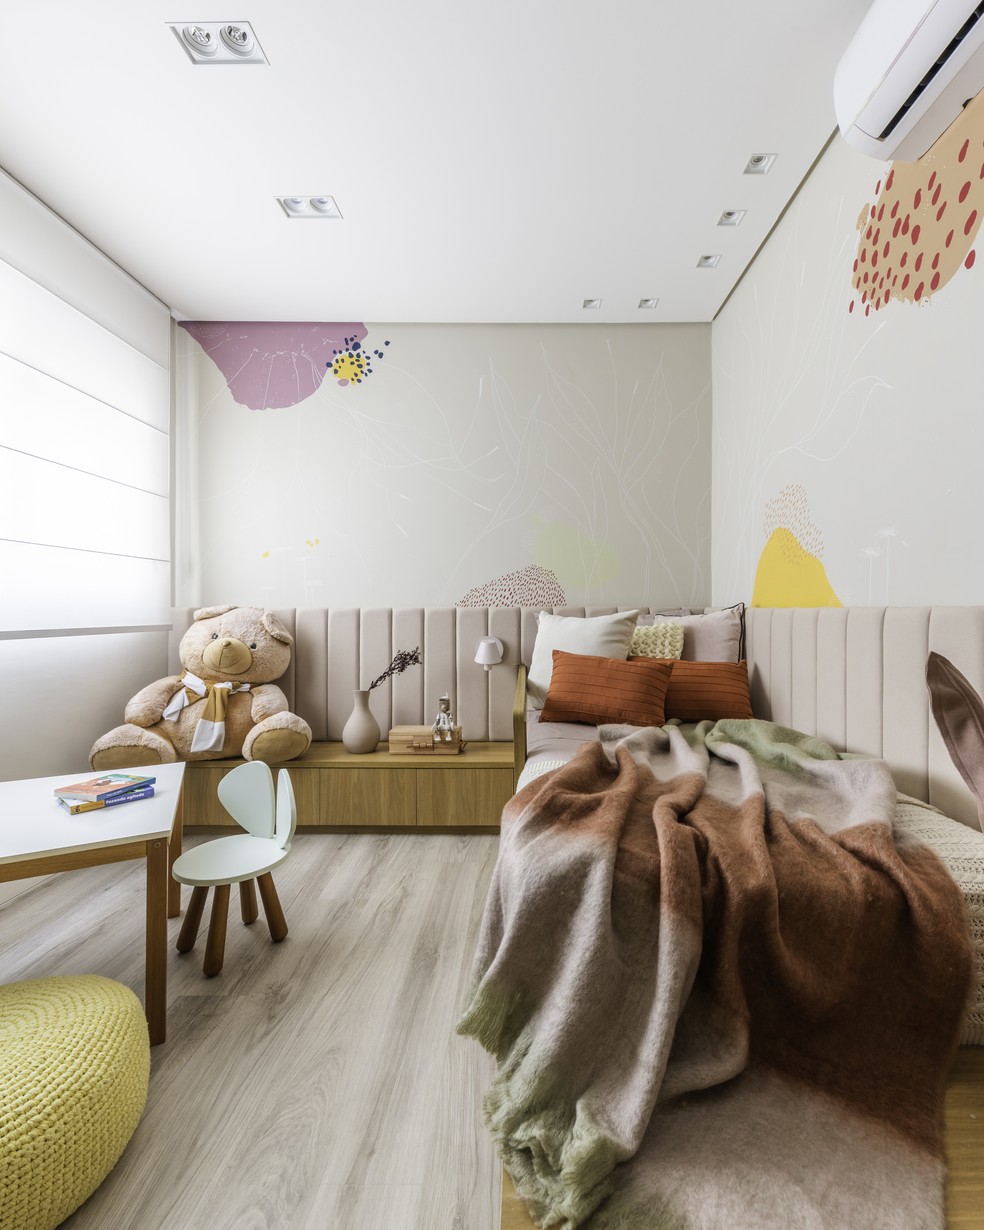 No quarto de criança, as paredes ganharam pinturas decorativas que reforçam o aspecto lúdico da decoração — Foto: Guilherme Pucci